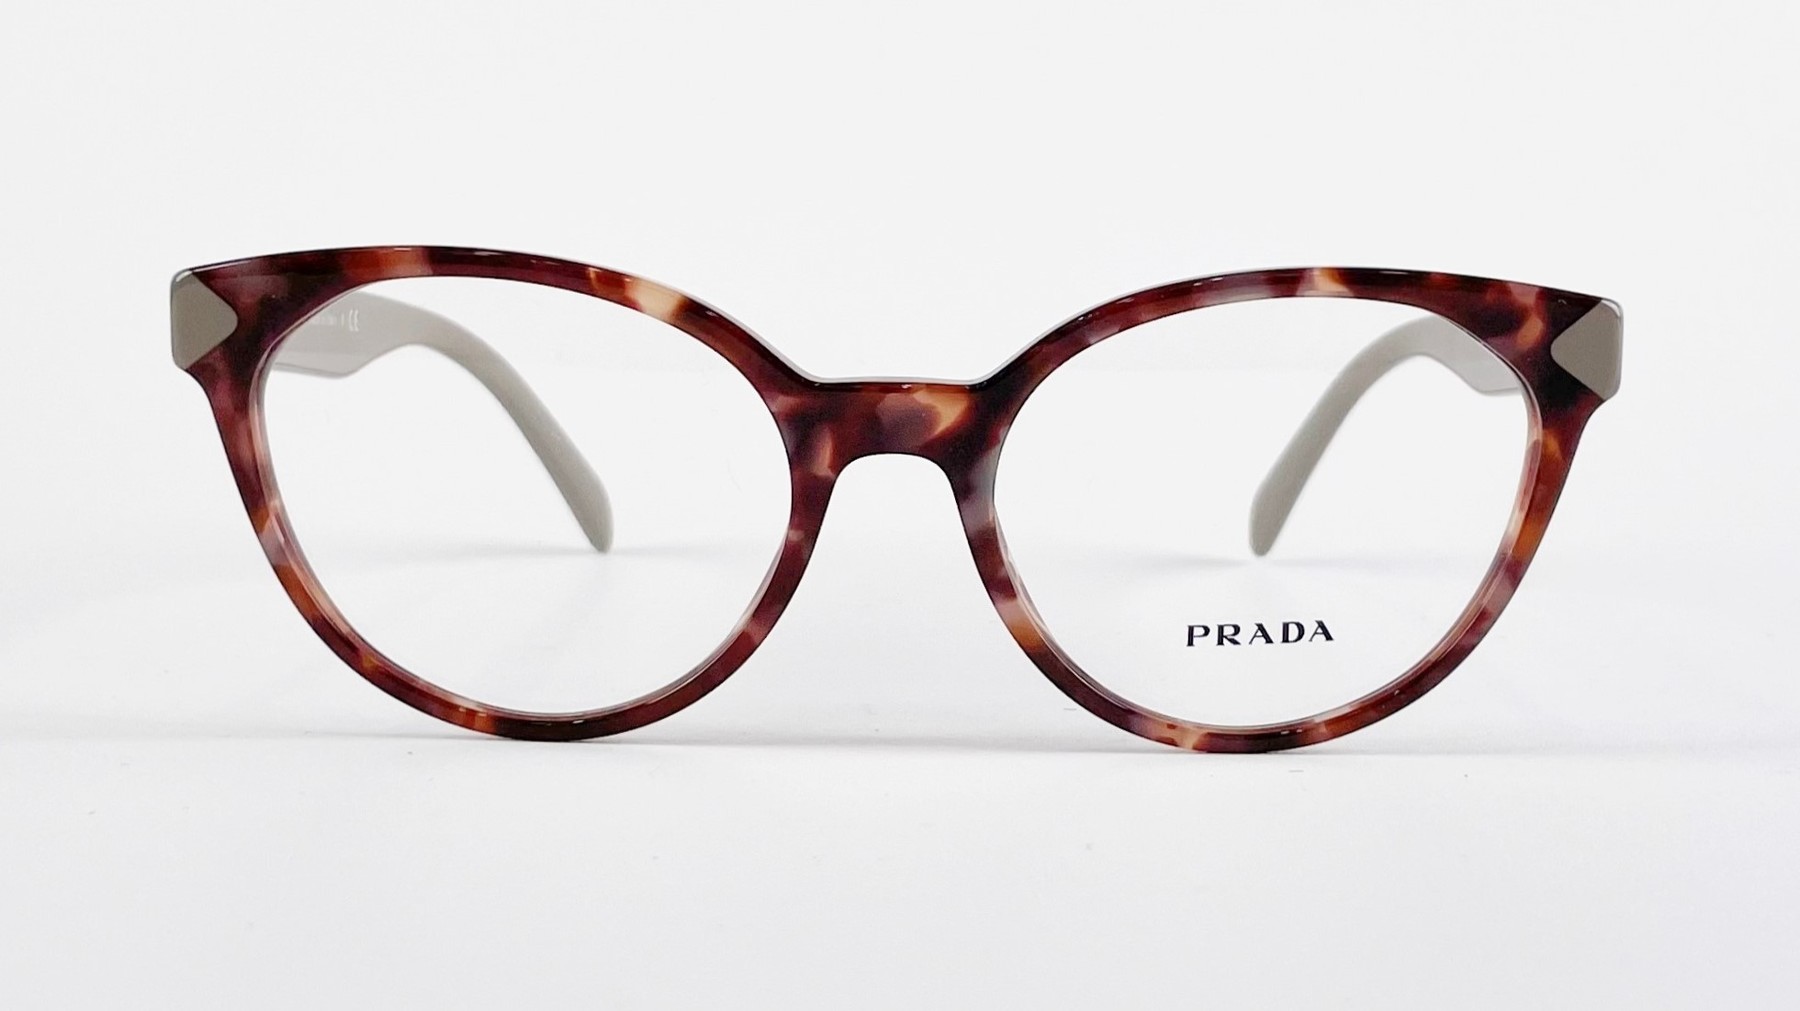 PRADA VPR 01T, Korean glasses, sunglasses, eyeglasses, glasses